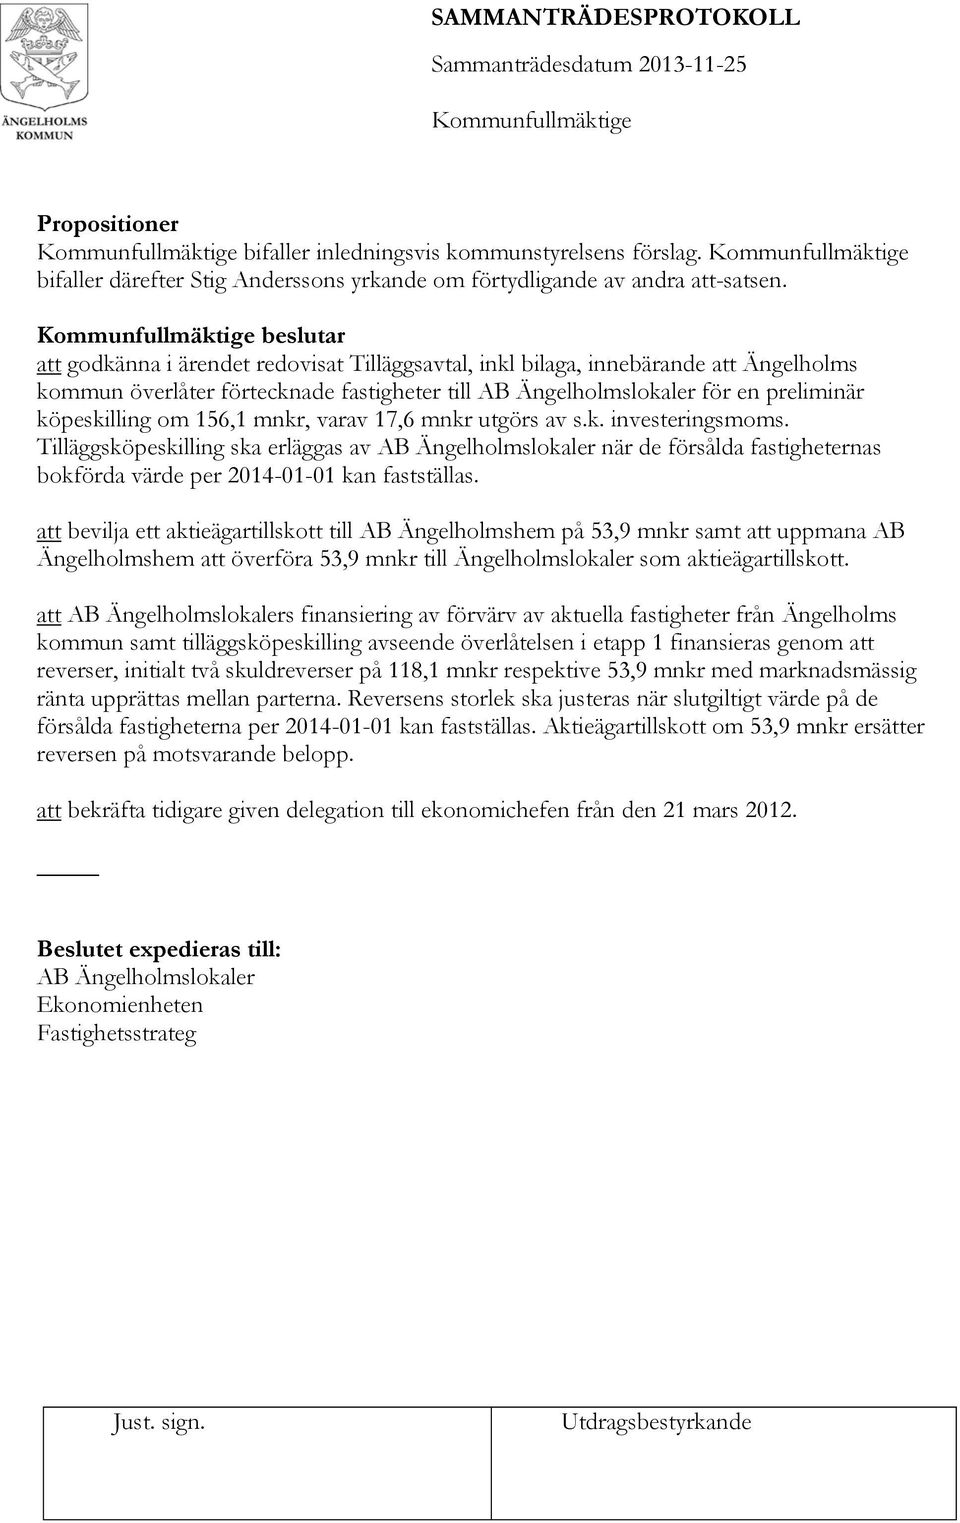 156,1 mnkr, varav 17,6 mnkr utgörs av s.k. investeringsmoms. Tilläggsköpeskilling ska erläggas av AB Ängelholmslokaler när de försålda fastigheternas bokförda värde per 2014-01-01 kan fastställas.